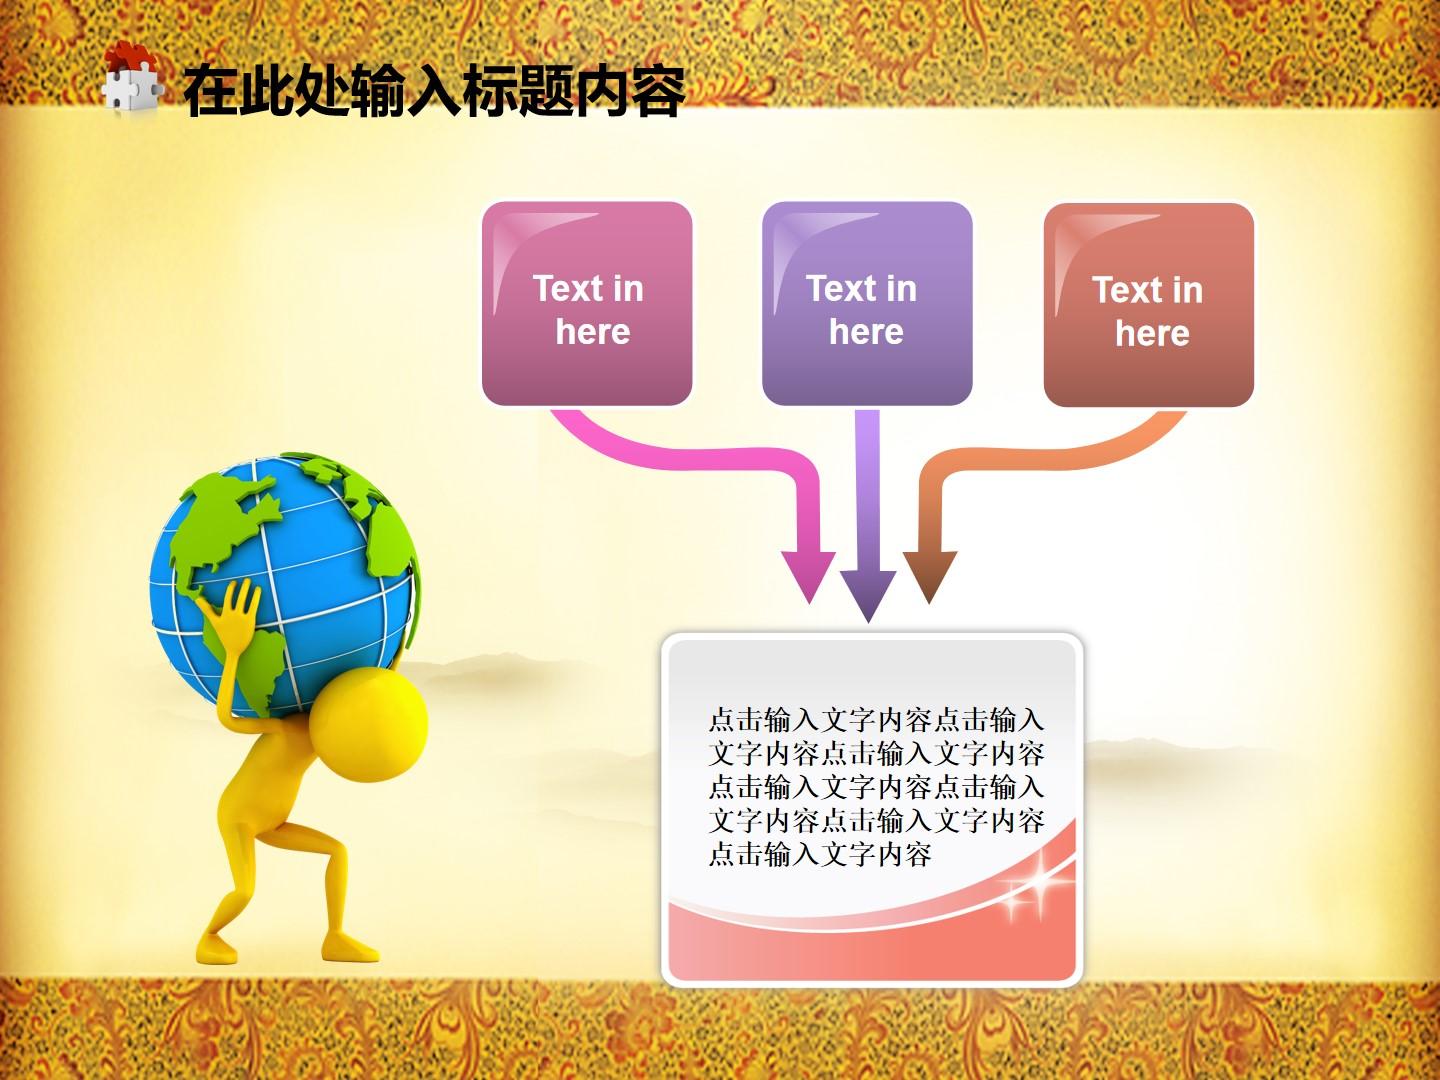 教育教学橙色黄色白色中国风突出实景text云素材PPT模板1672494426811